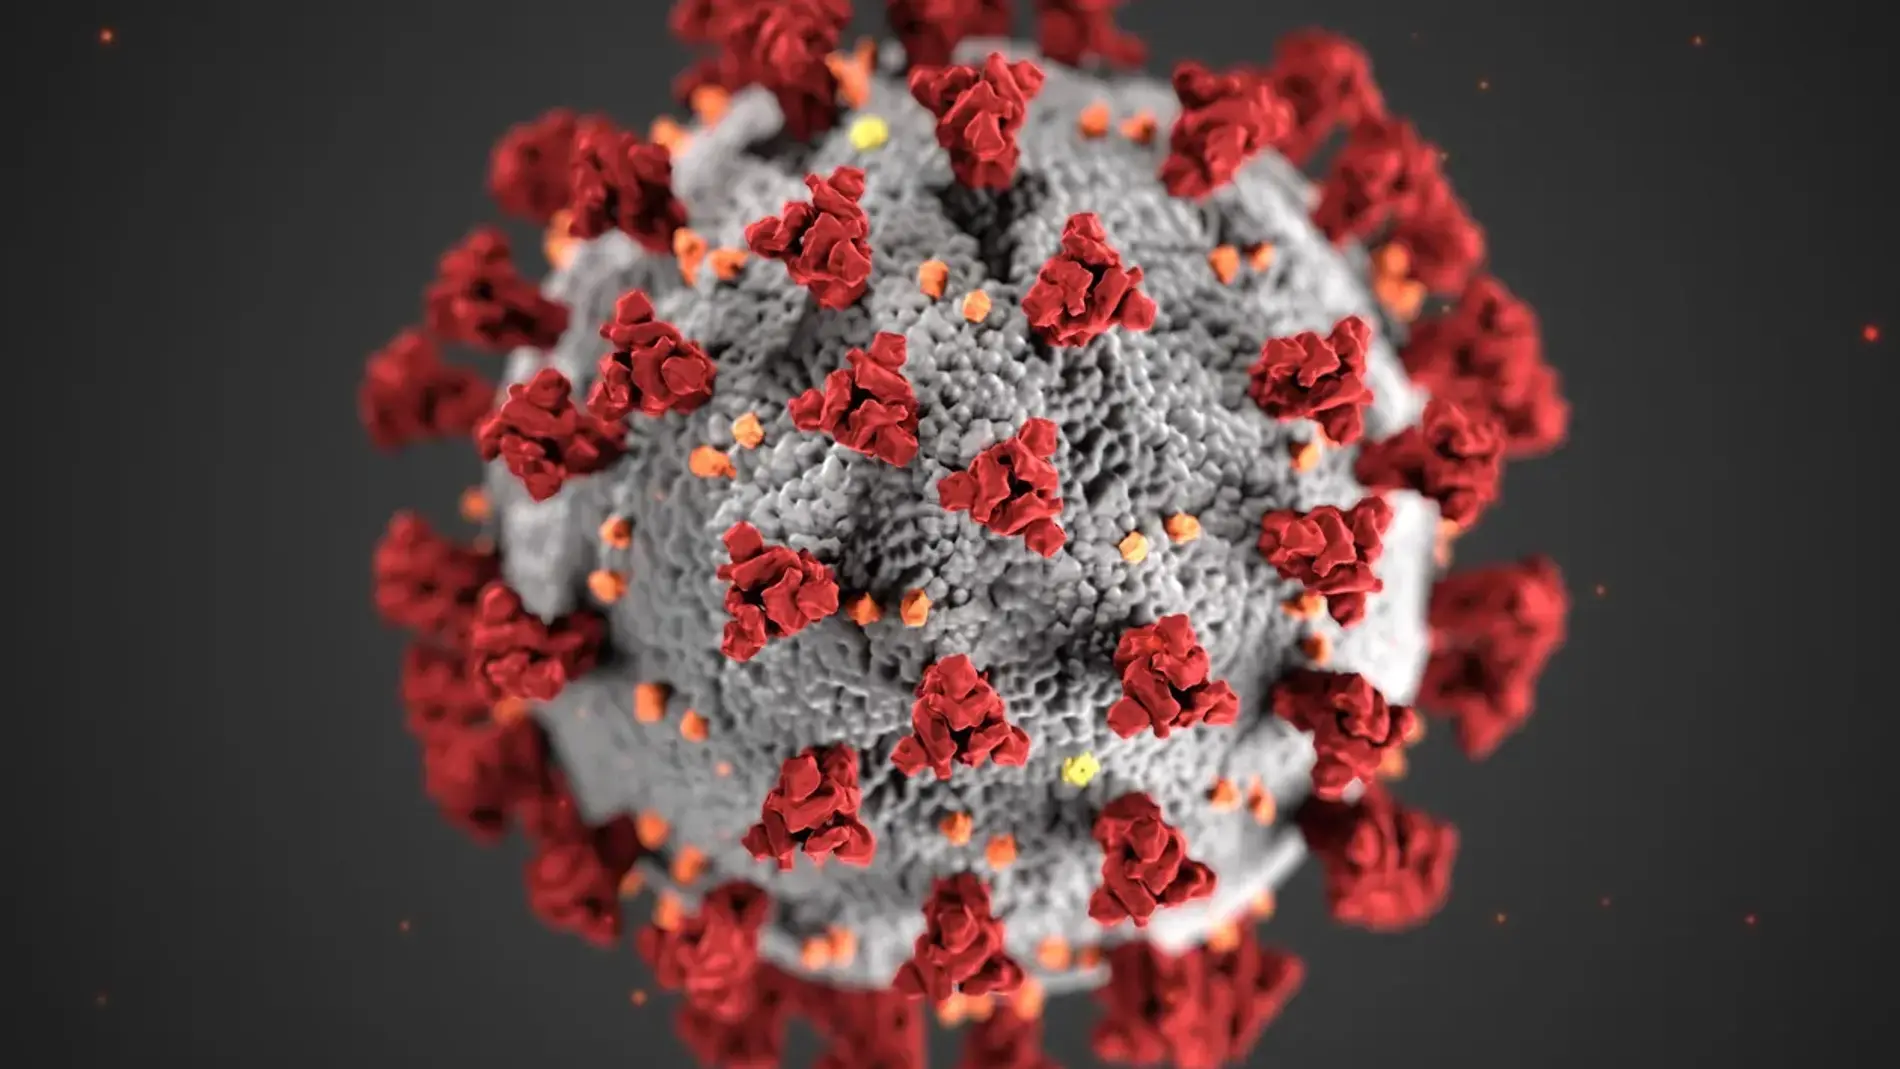 Ilustración de la morfología del coronavirus realizada por el Control de Prevención de Enfermedades (CDC)/Foto: CDC HANDOUT/EFE